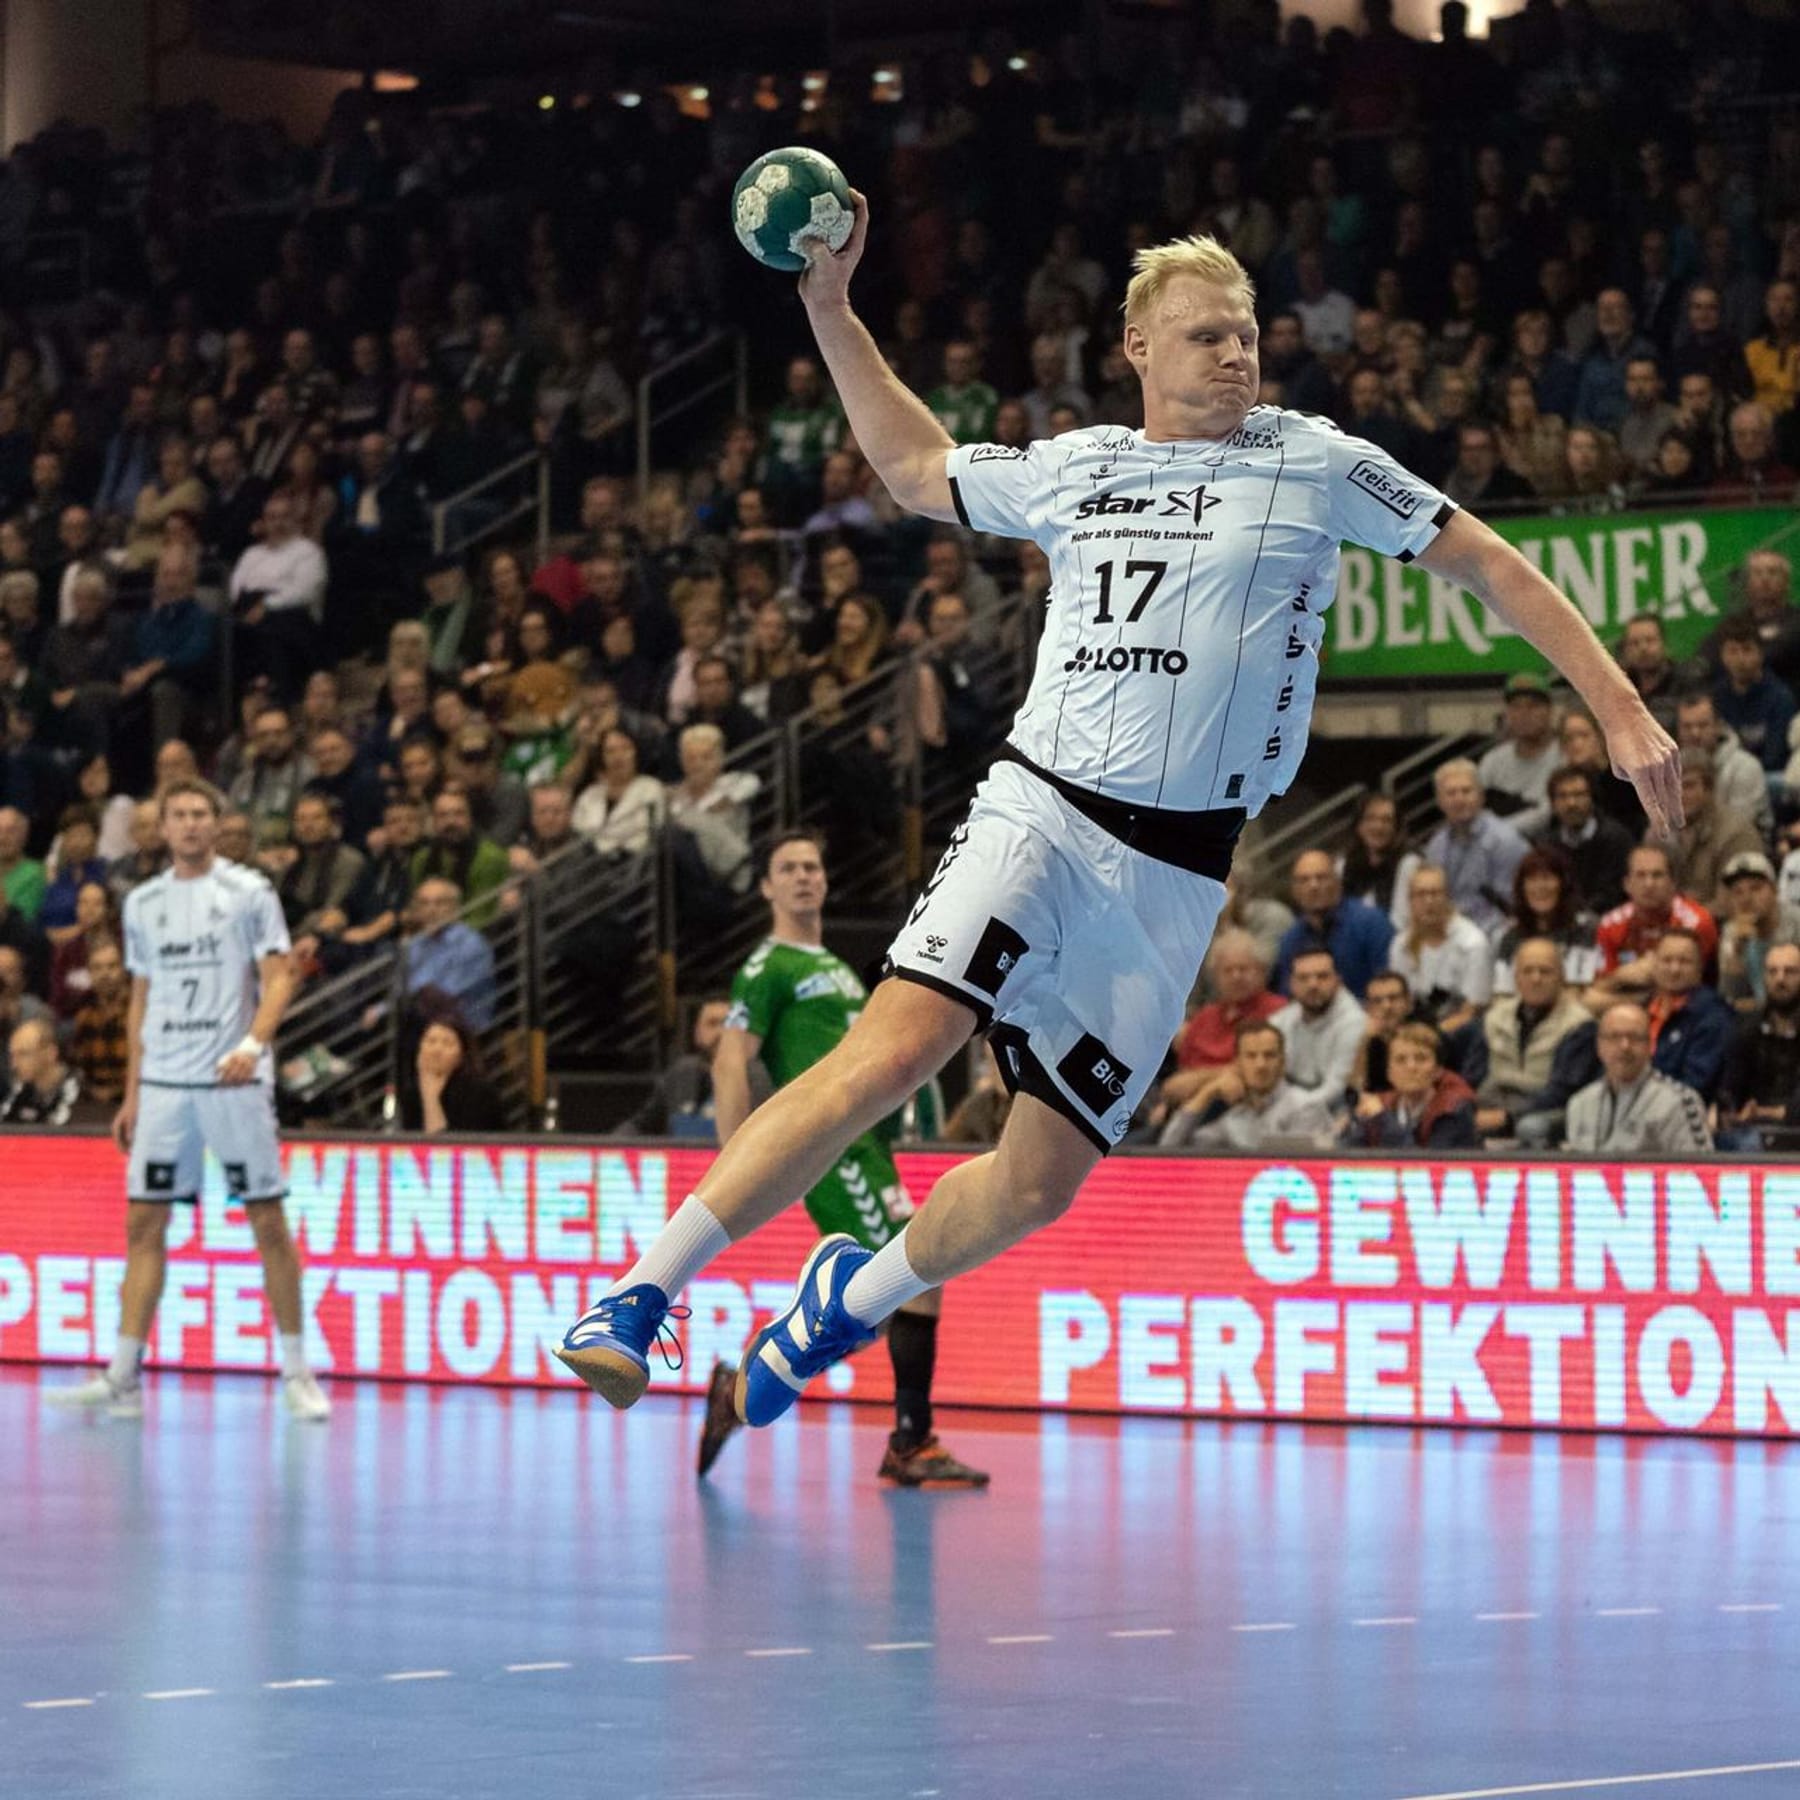 Handball-EM 2020 Wo werden die Spiele in TV und Livestream übertragen?